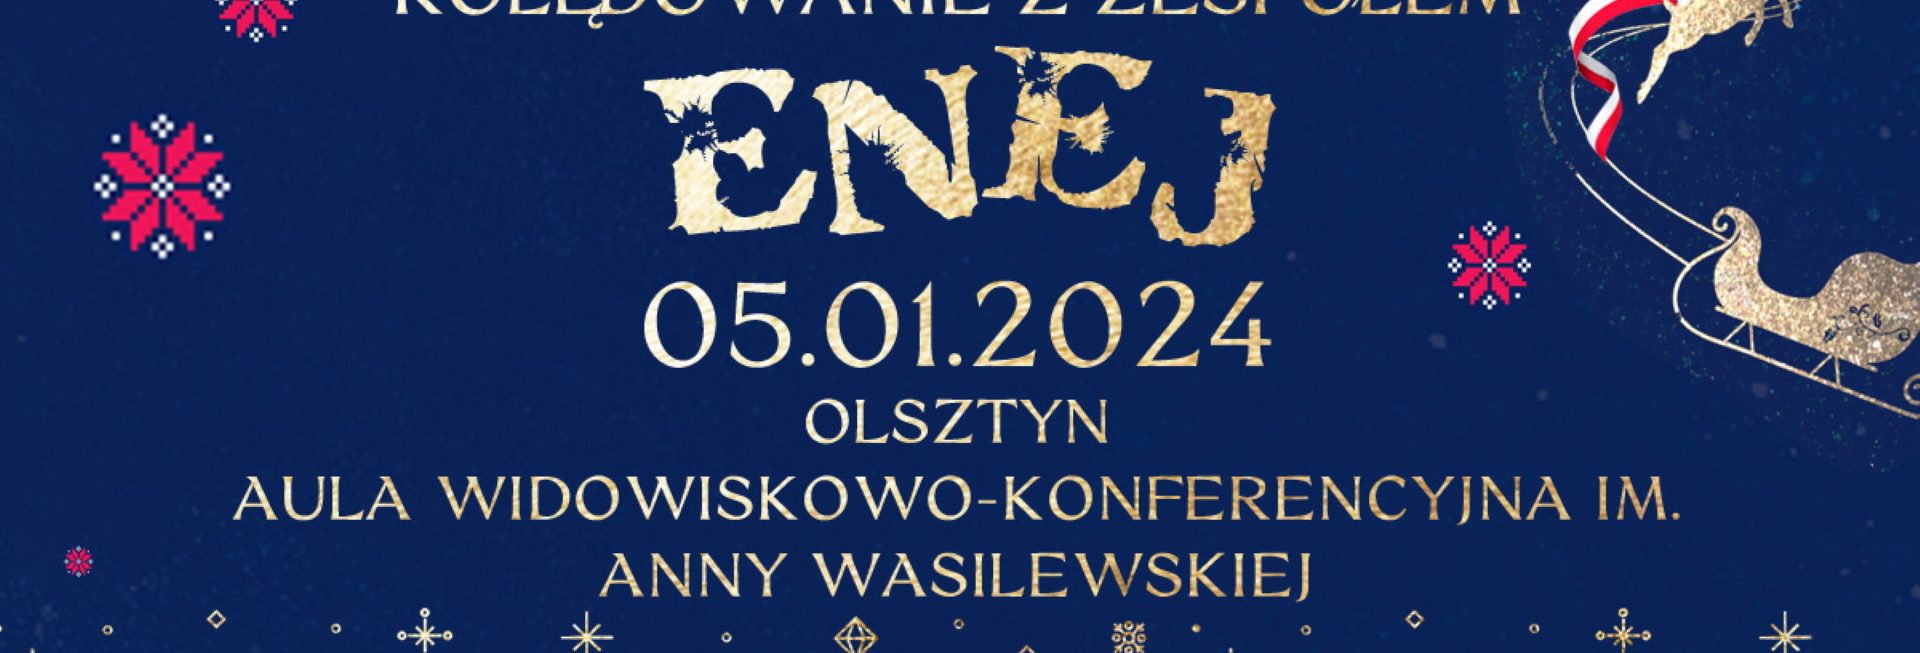 Plakat zapraszający w piątek 5 stycznia 2024 r. do Olsztyna na koncert "Kolędowanie z zespołem ENEJ" Olsztyn 2024.